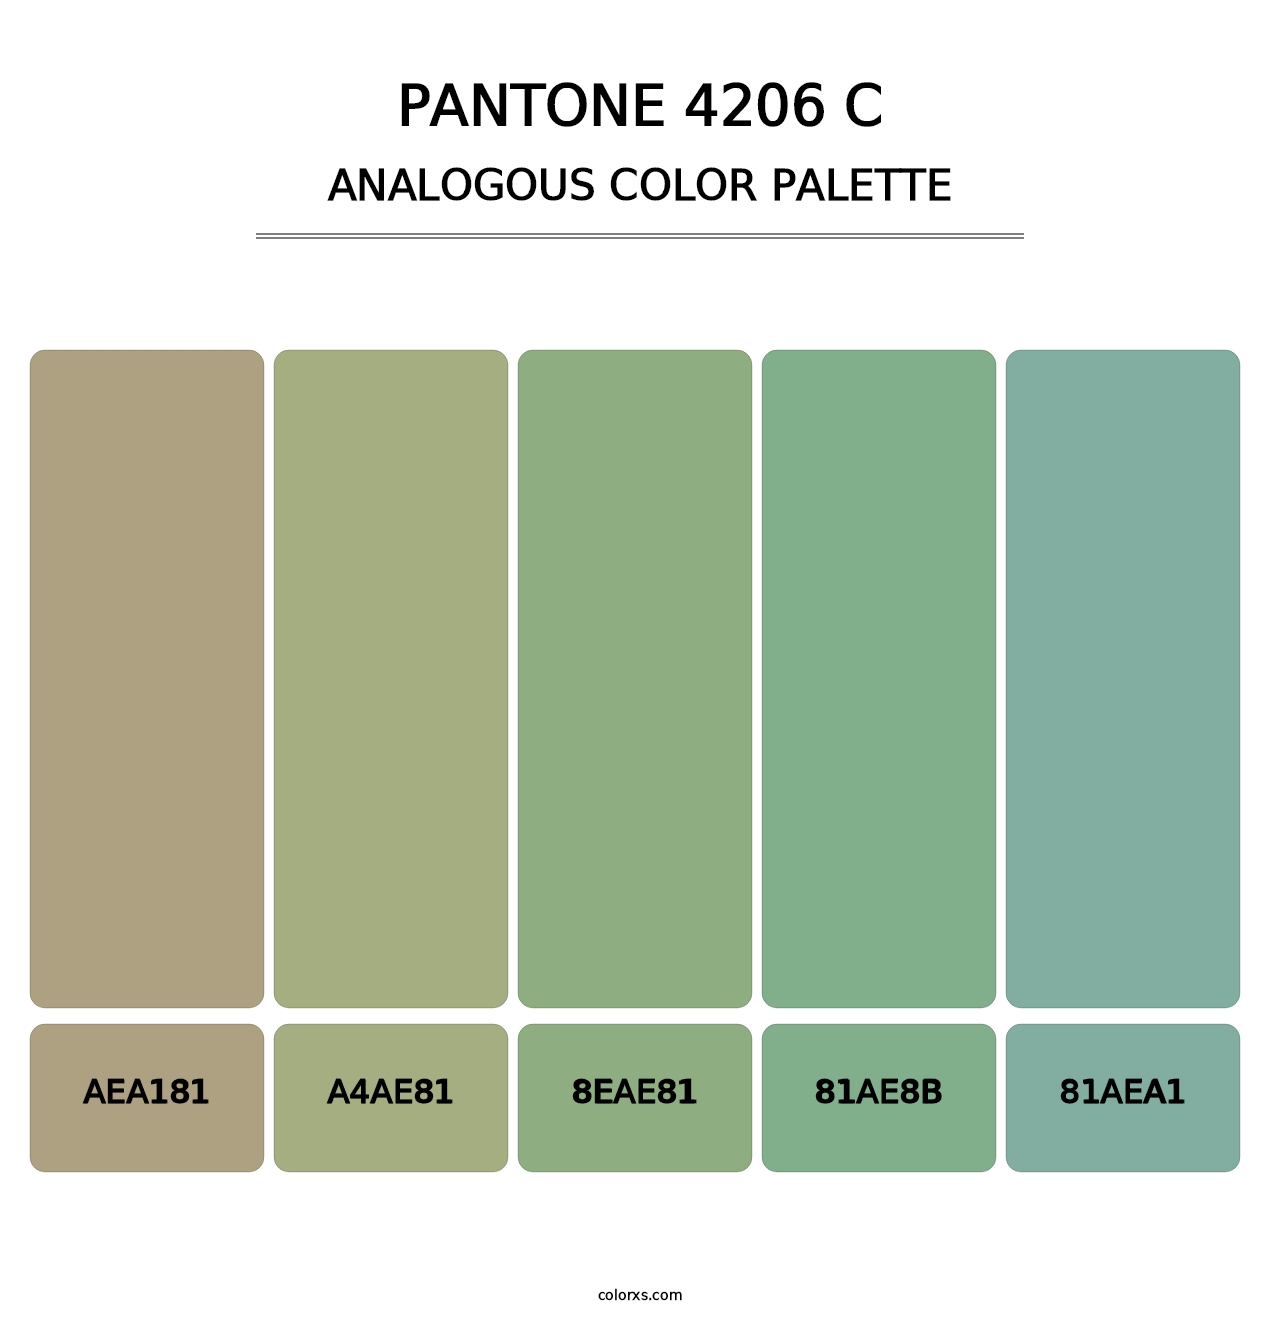 PANTONE 4206 C - Analogous Color Palette